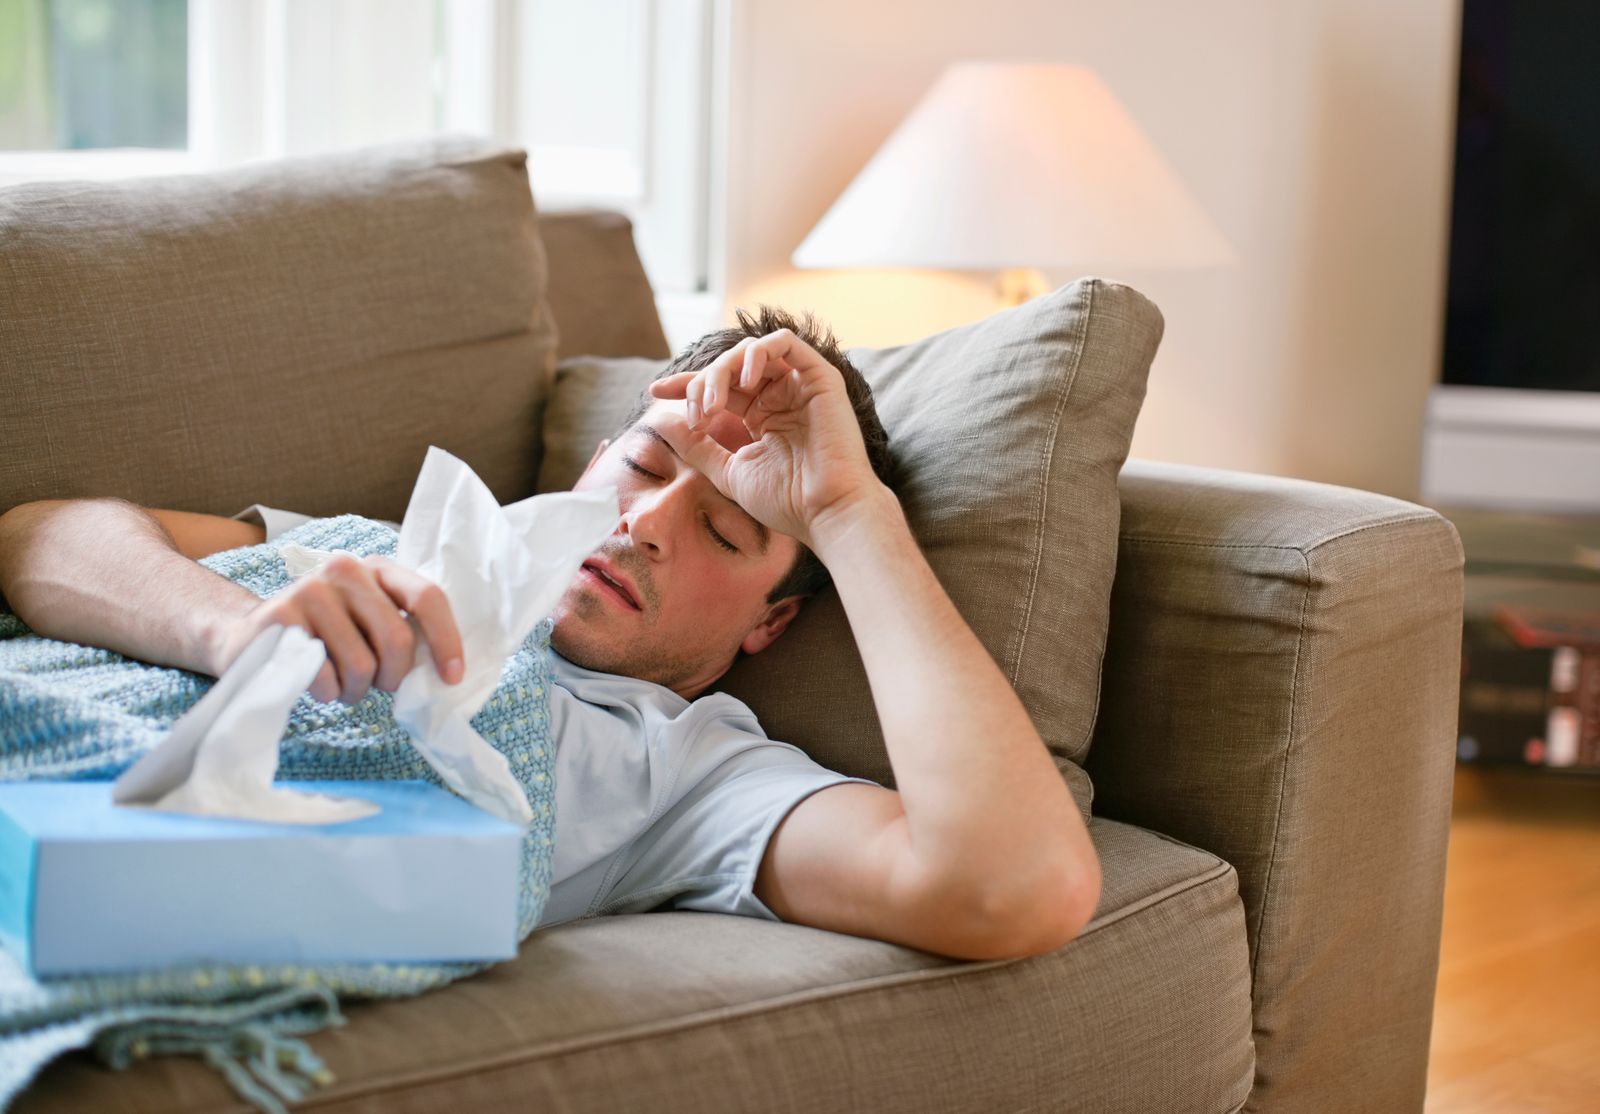 يصاب بعض الناس بآلام عضلية وحمى ليوم أو يومين بعد أخذ لقاح الإنفلونزا - Getty